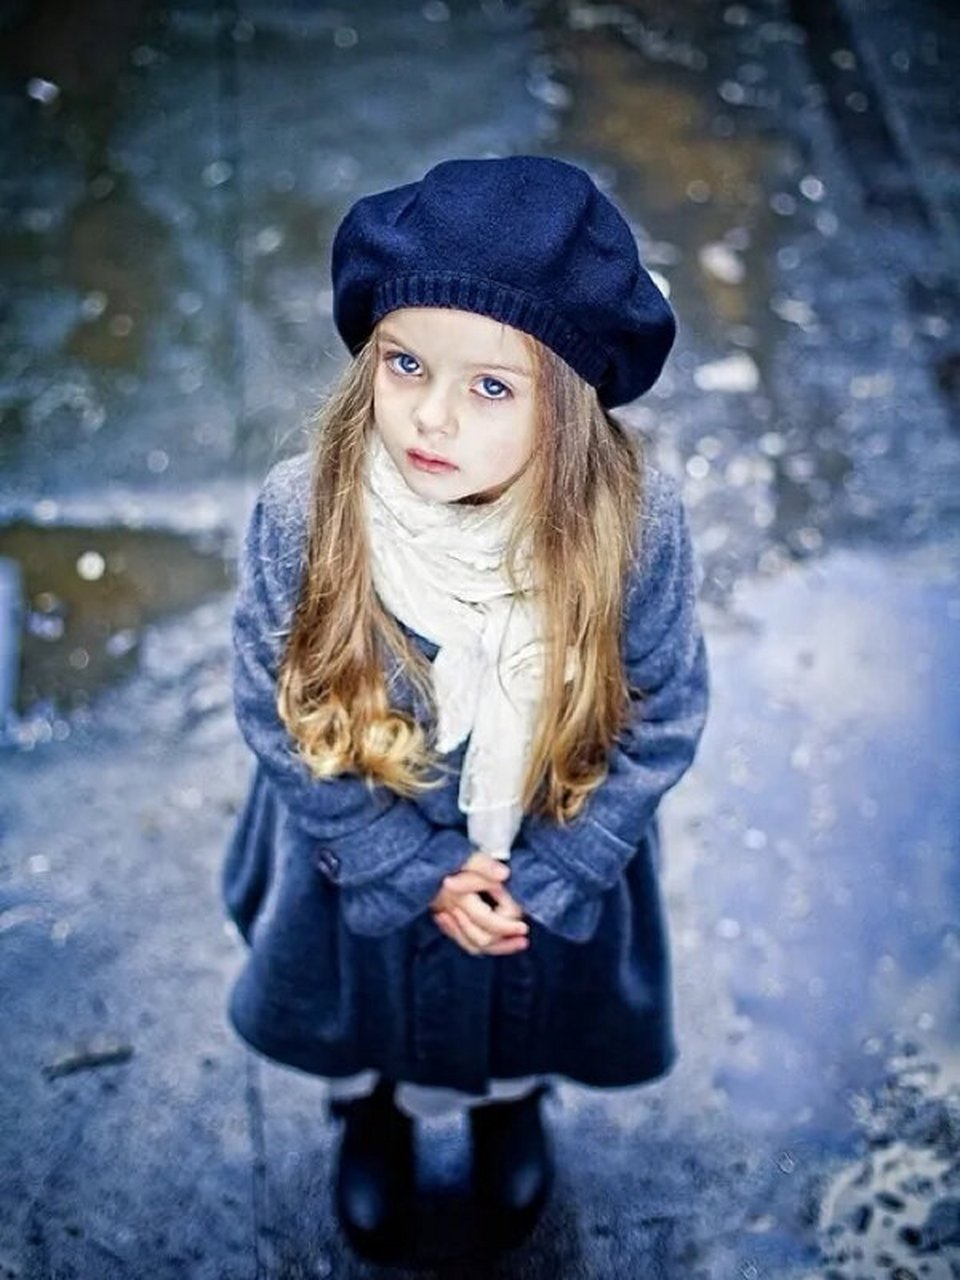 俄罗斯小女孩米兰图片